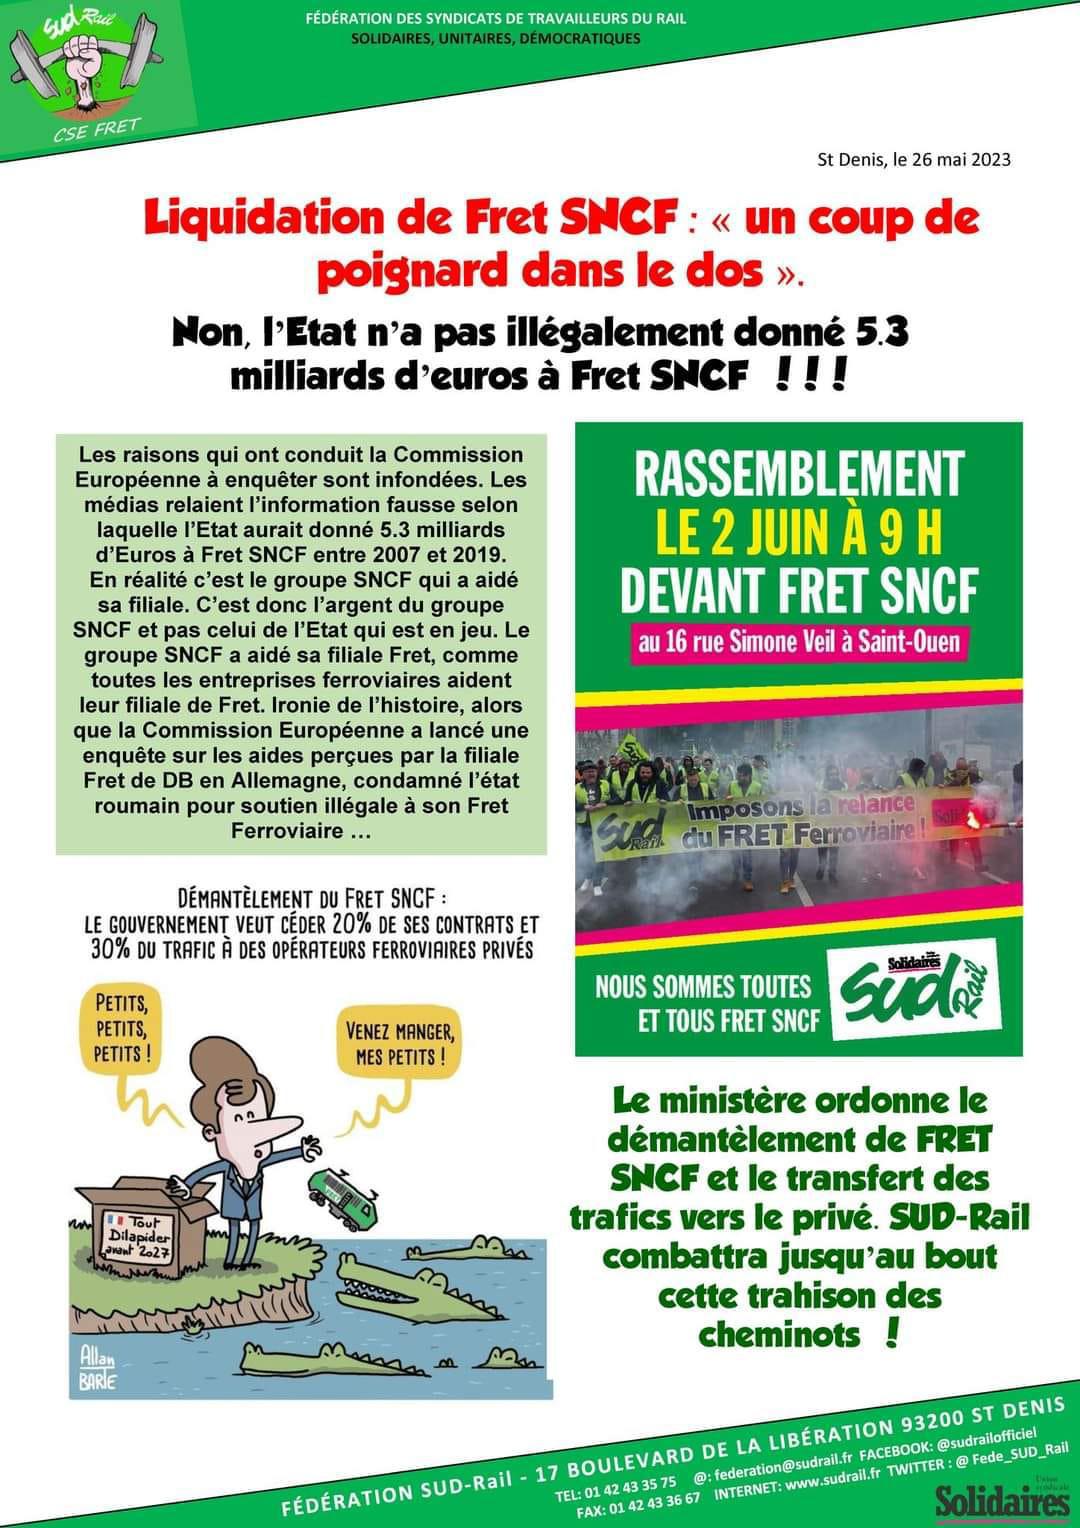 Liquidation de Fret SNCF : "Un coup de poignard dans le dos"